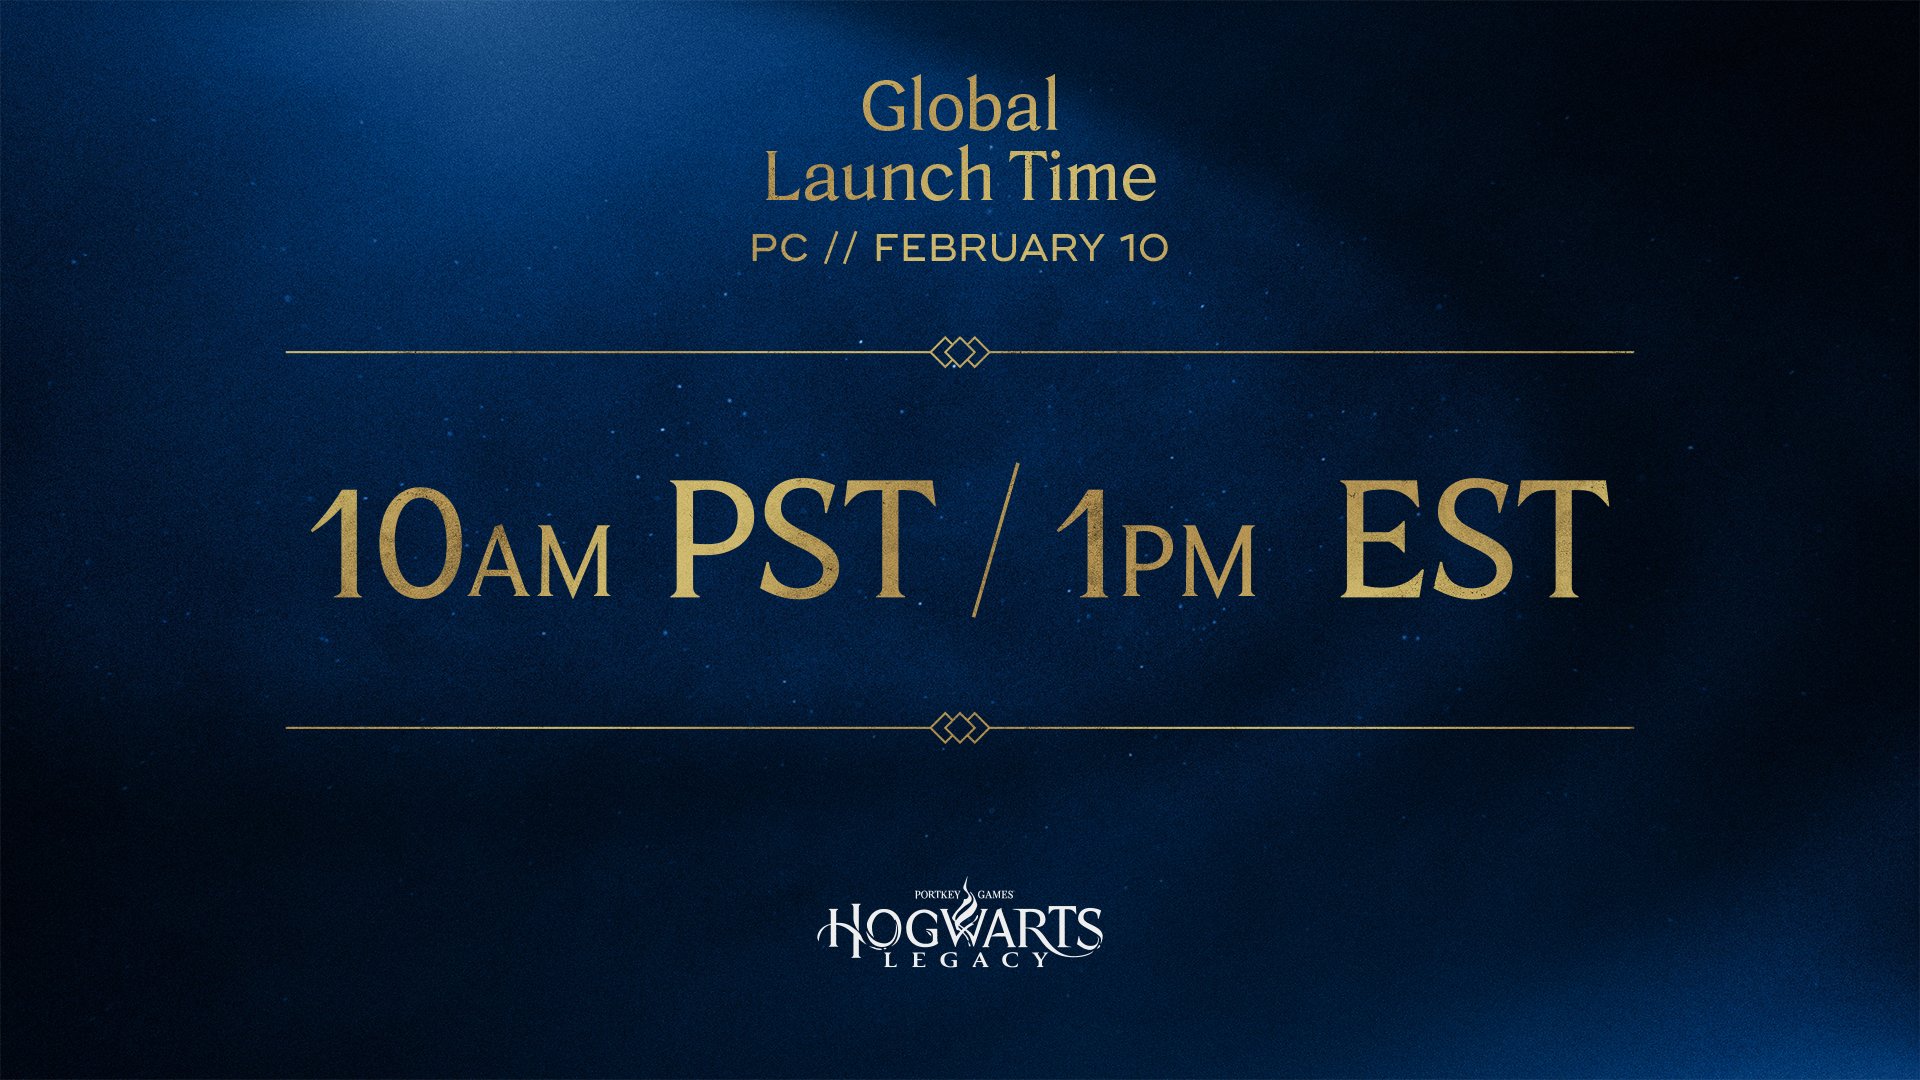 《霍格沃茨之遗》全球各地解锁时间公布最早可于2月7日游玩